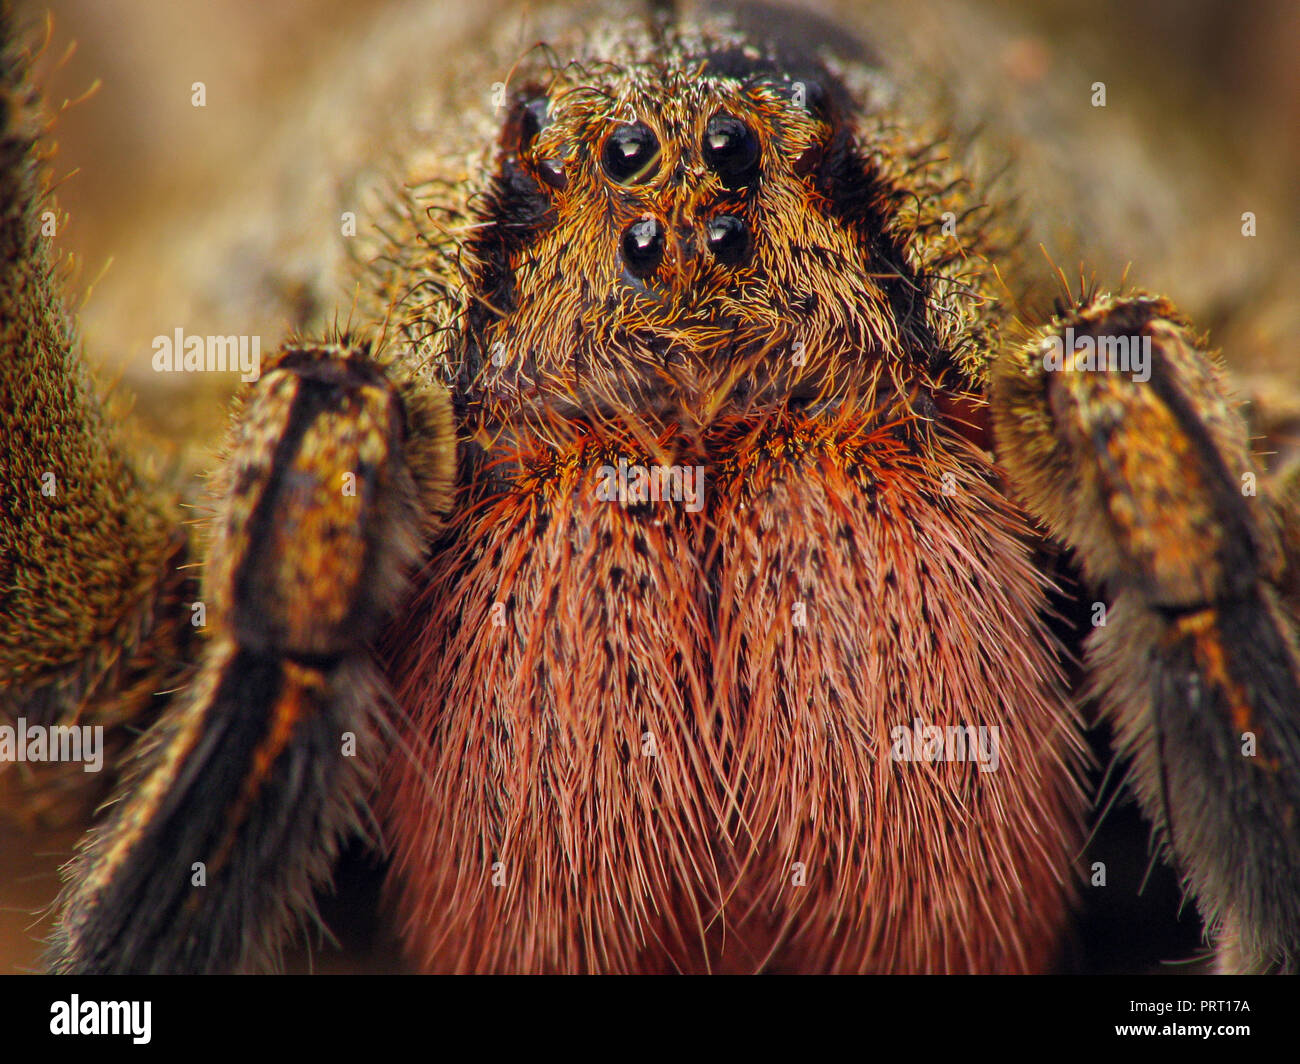 L'errance du Brésil (araignée Phoneutria) face portrait macro montrant les yeux et les crocs rouges (chélicères). Depuis le sud-est du Brésil. Banque D'Images